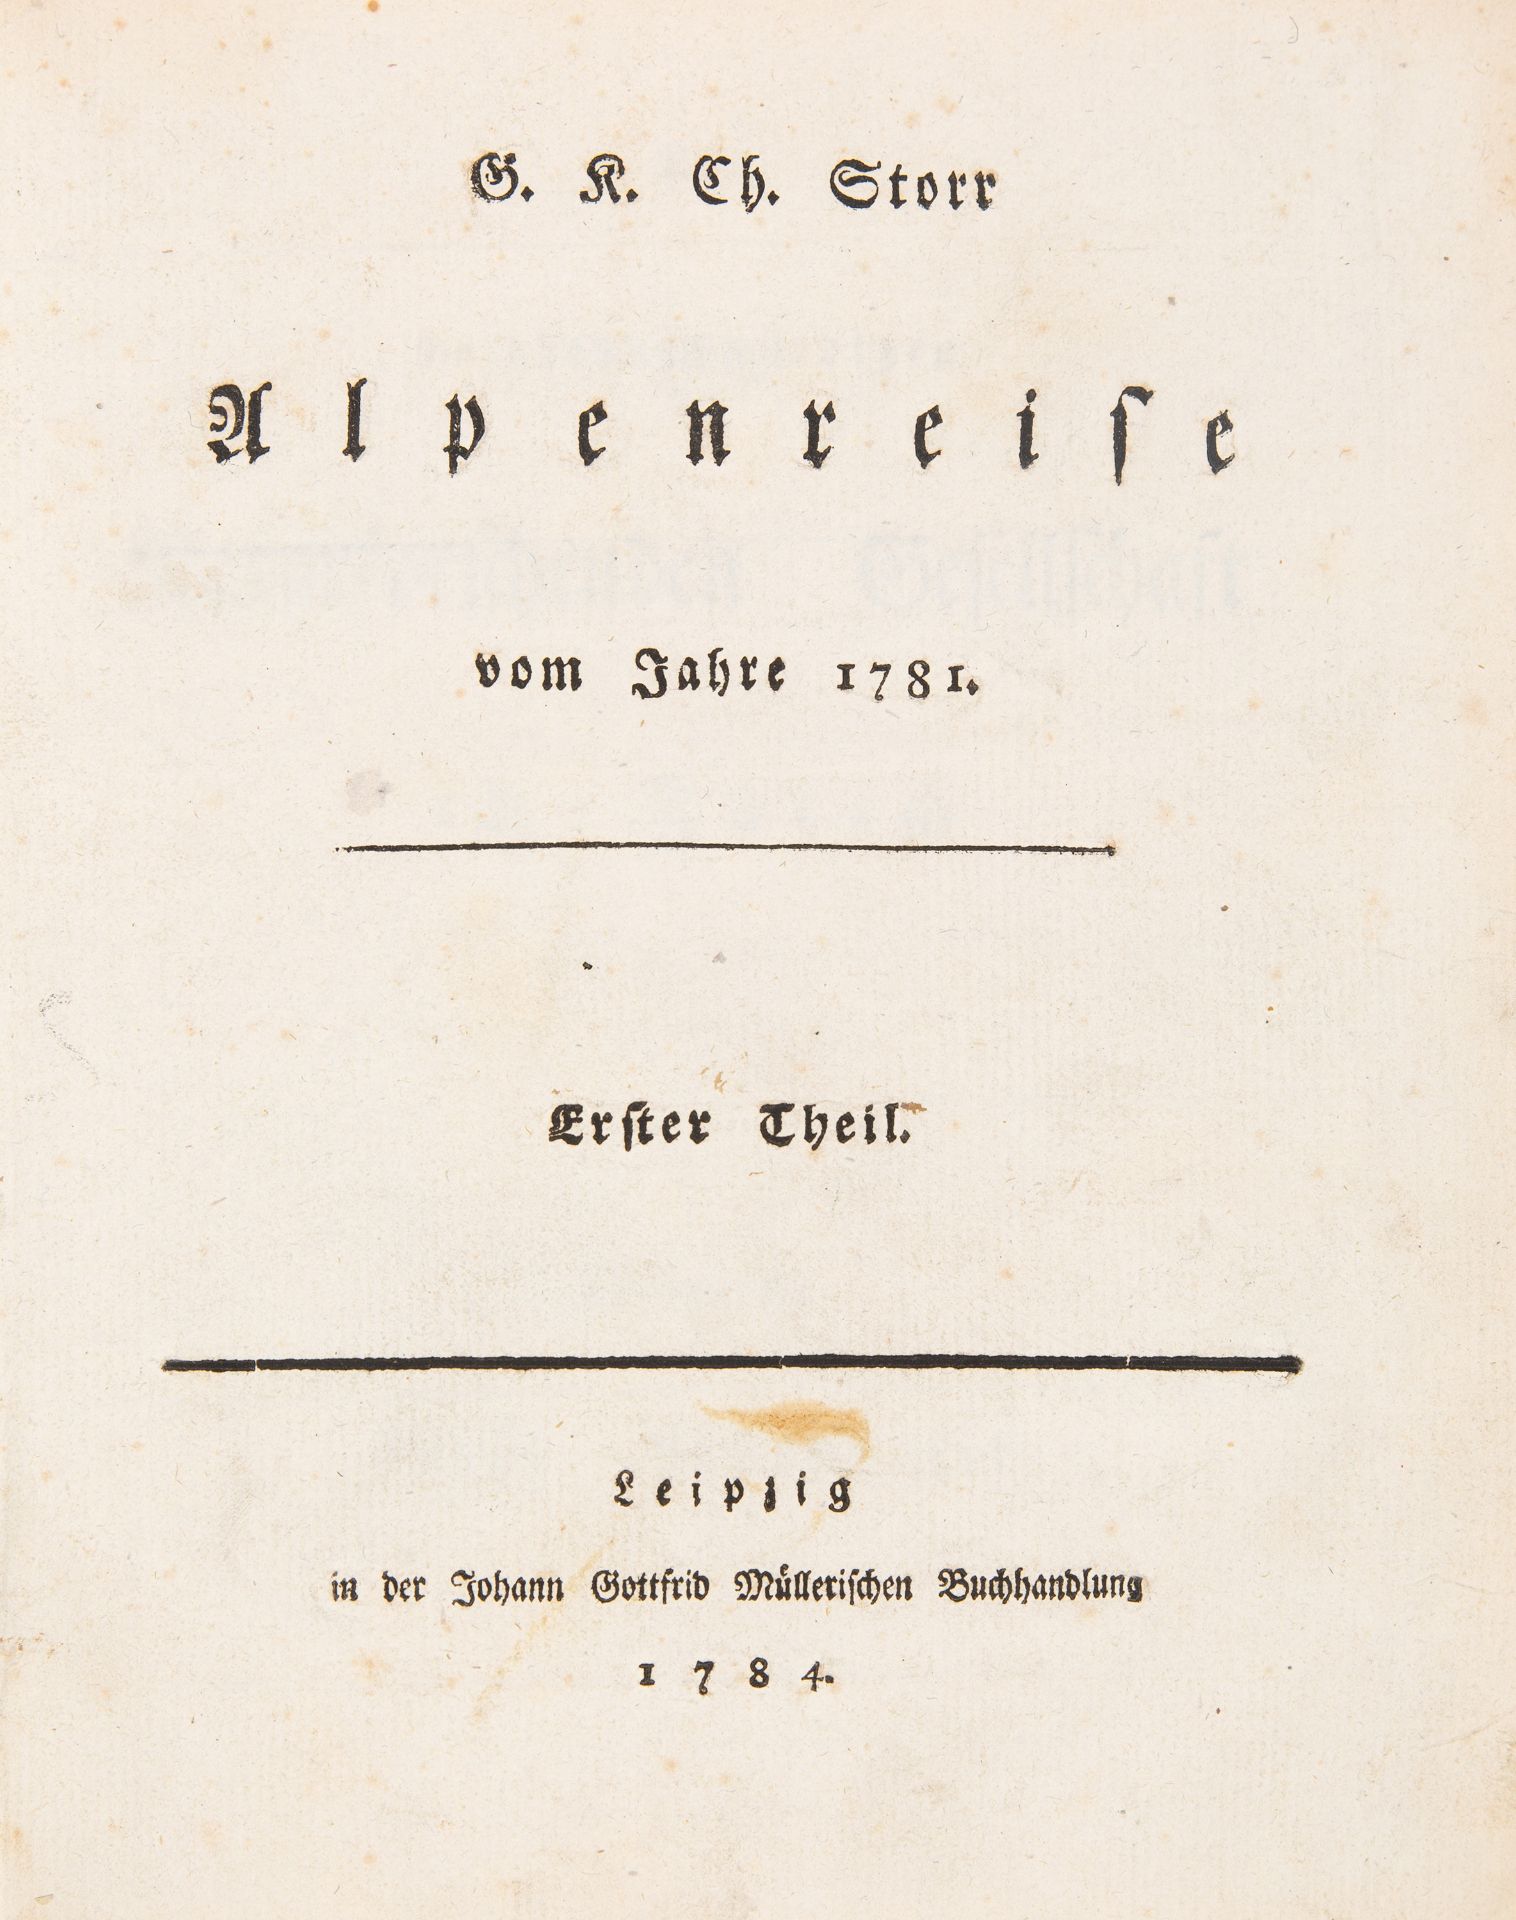 G.K.Ch. Storr, Alpenreise vom Jahre 1781. 2 Teile in 1 Bd. Lpz. 1784-86.